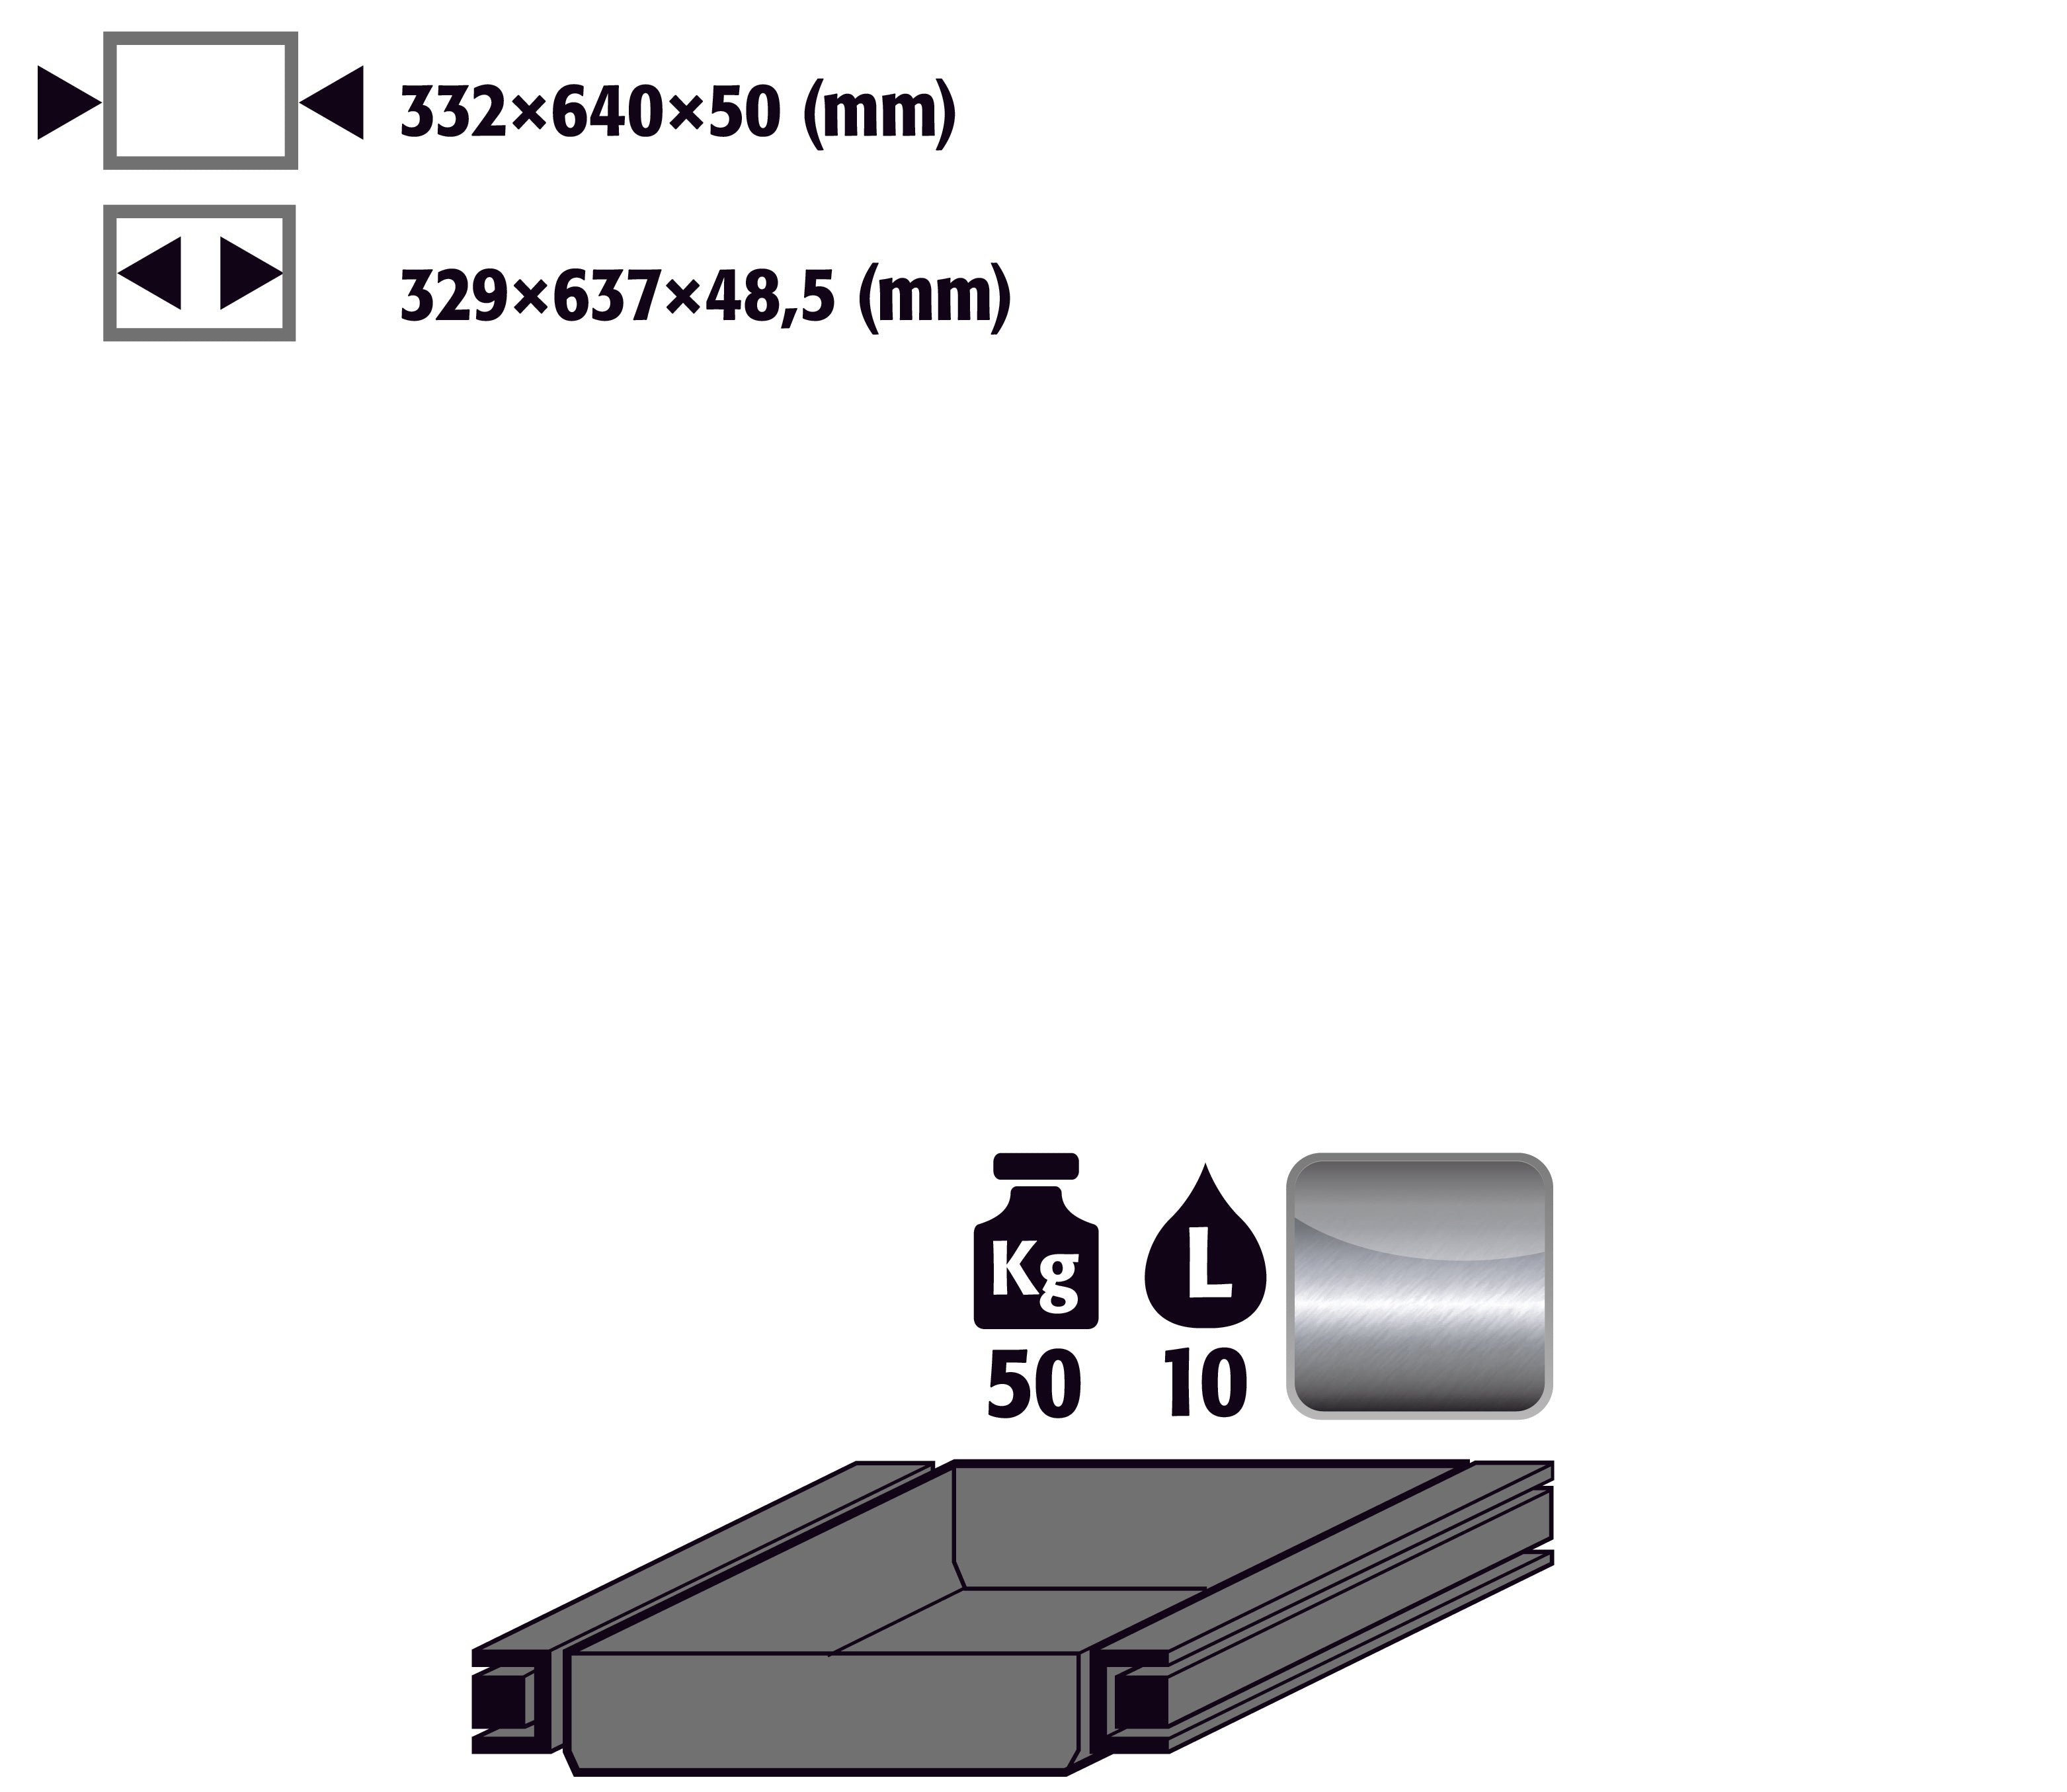 Bac coulissant évacuation charnière à droite (volume: 4,50 litres), acier inoxydable 1.4301 brut